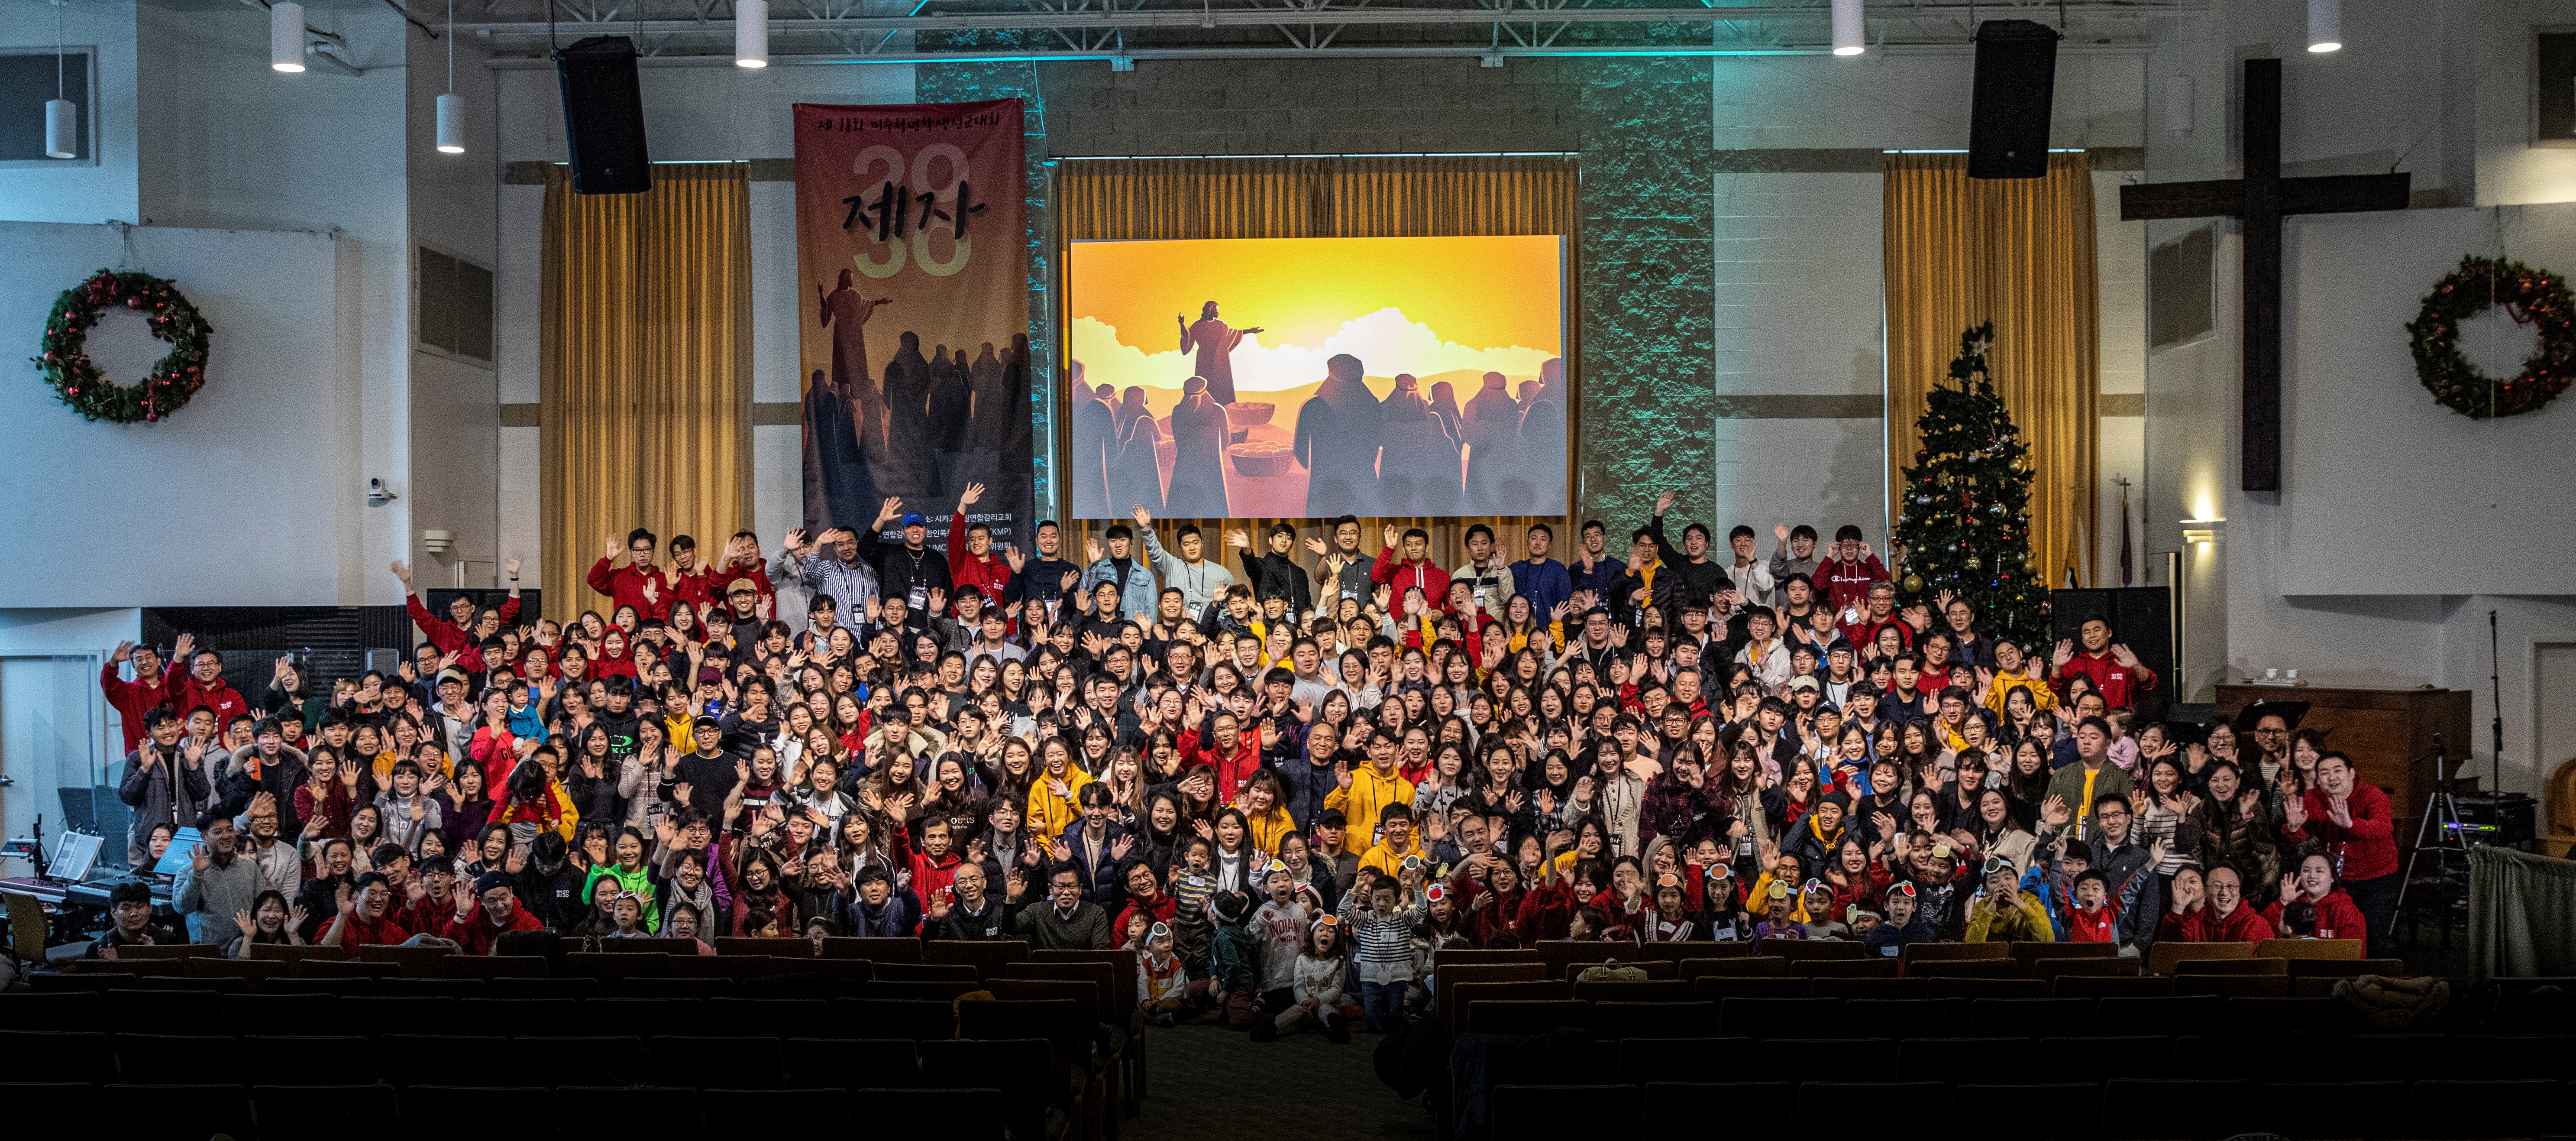 2019년 11월 27일부터 30일까지 시카고에서 열렸던 미주청년학생선교대회 2030컨퍼런스의 참가자들 모습. 사진 제공, 한명훈 목사, 2030 컨퍼런스.